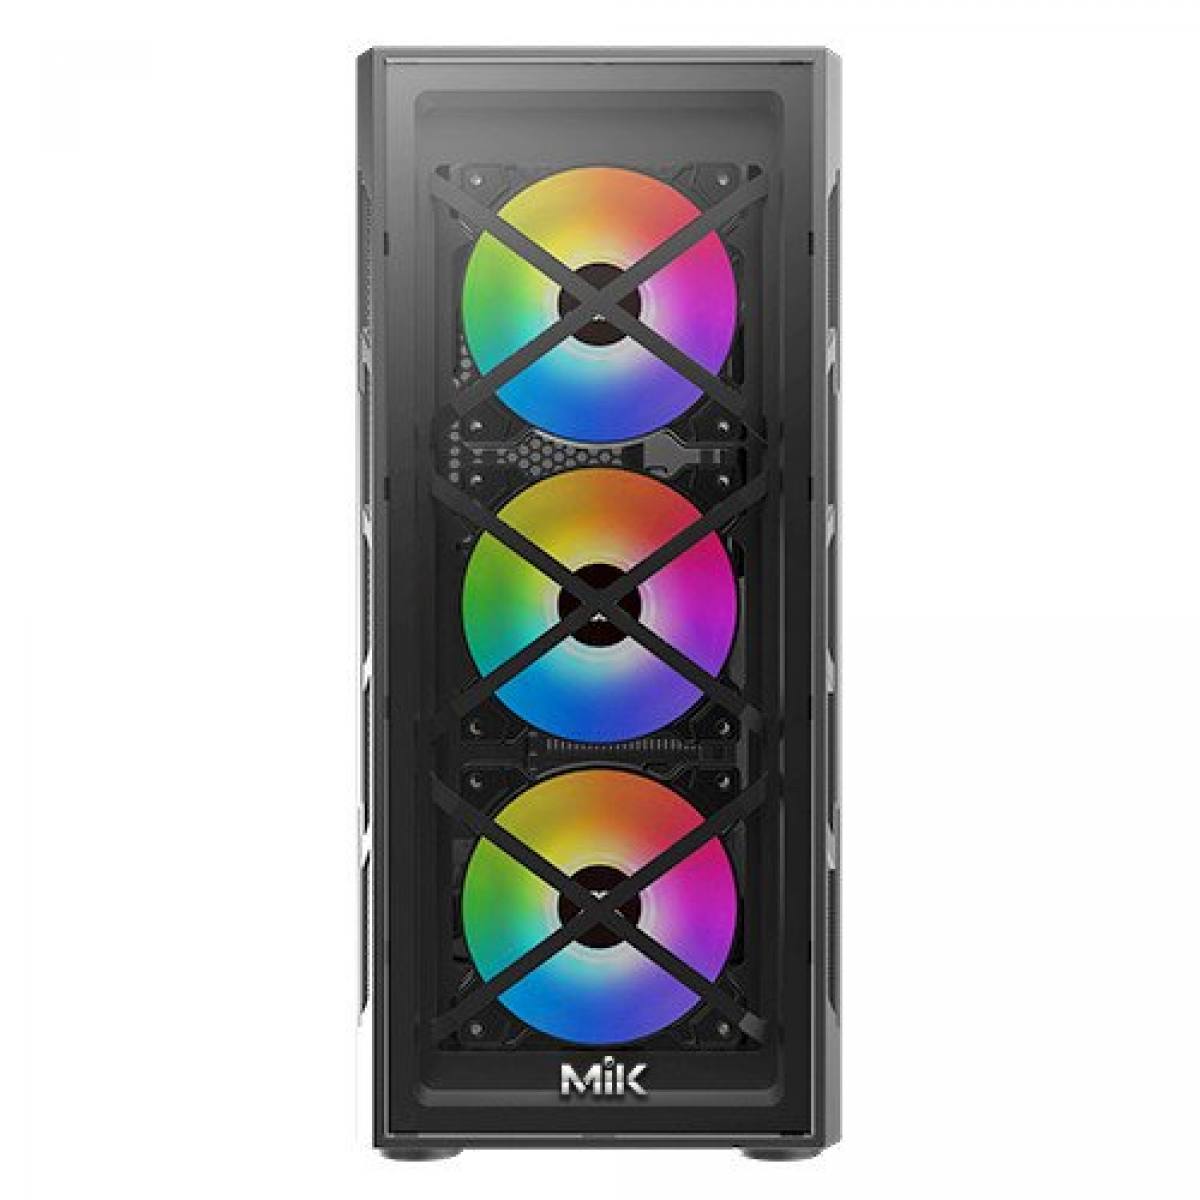 Vỏ Case MIK TN10 sẵn 3 Fan RGB